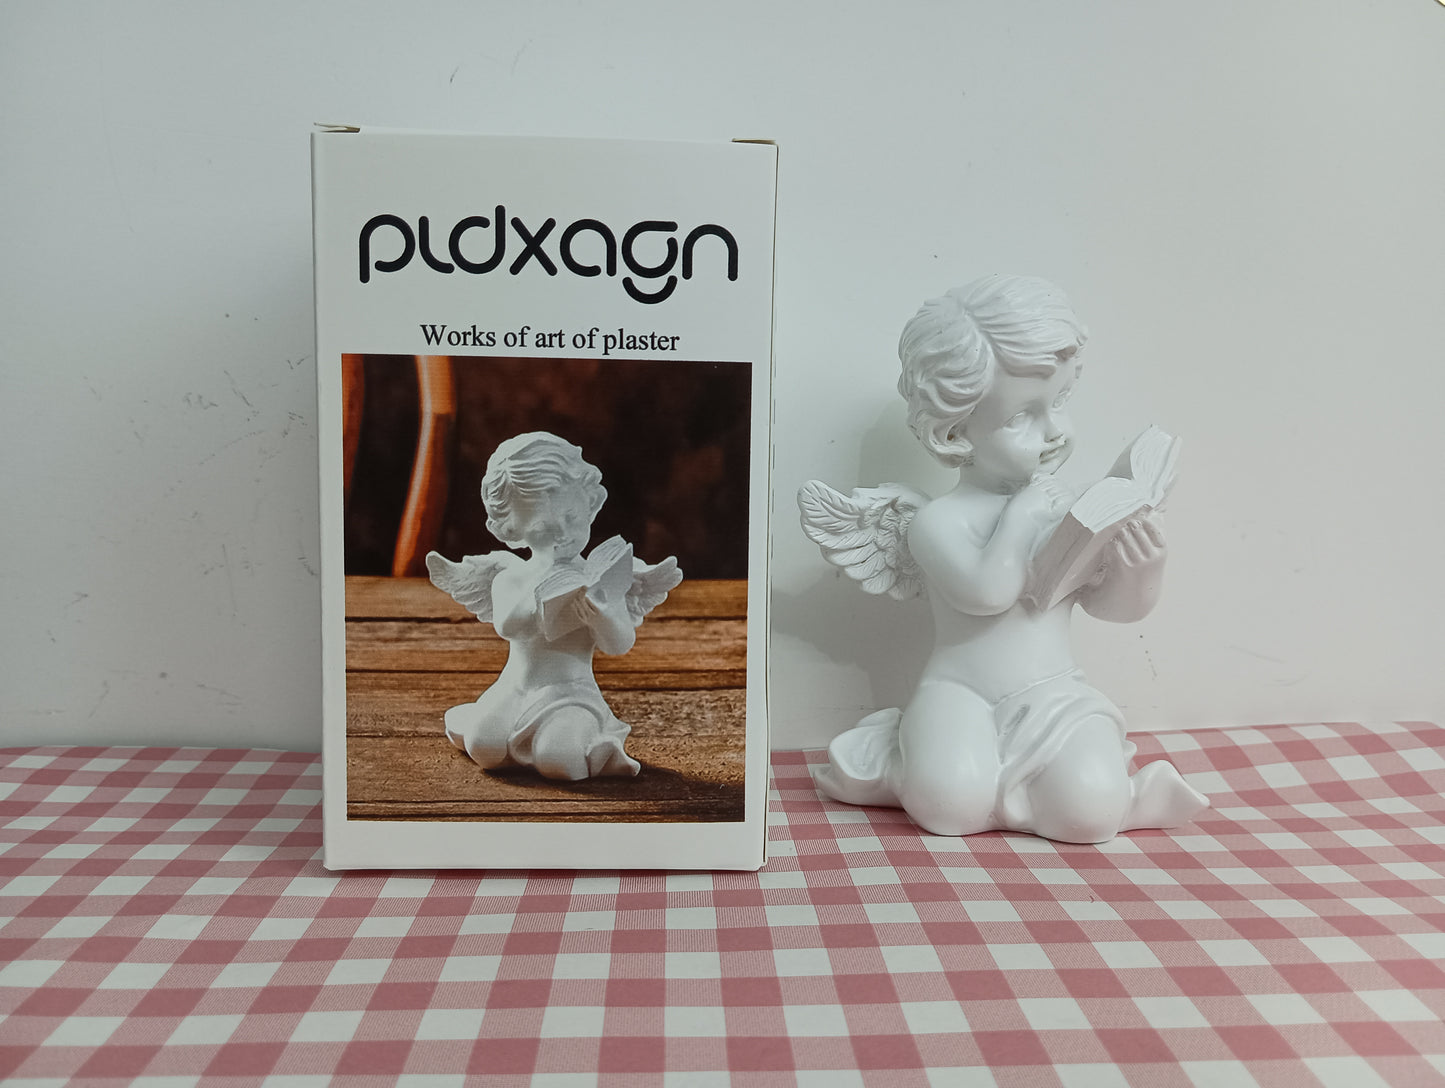 pldxagn Works of art of plaster plaster doll white embryo coloring doll white blank coloring children's toys graffiti diy plaster art sculpture